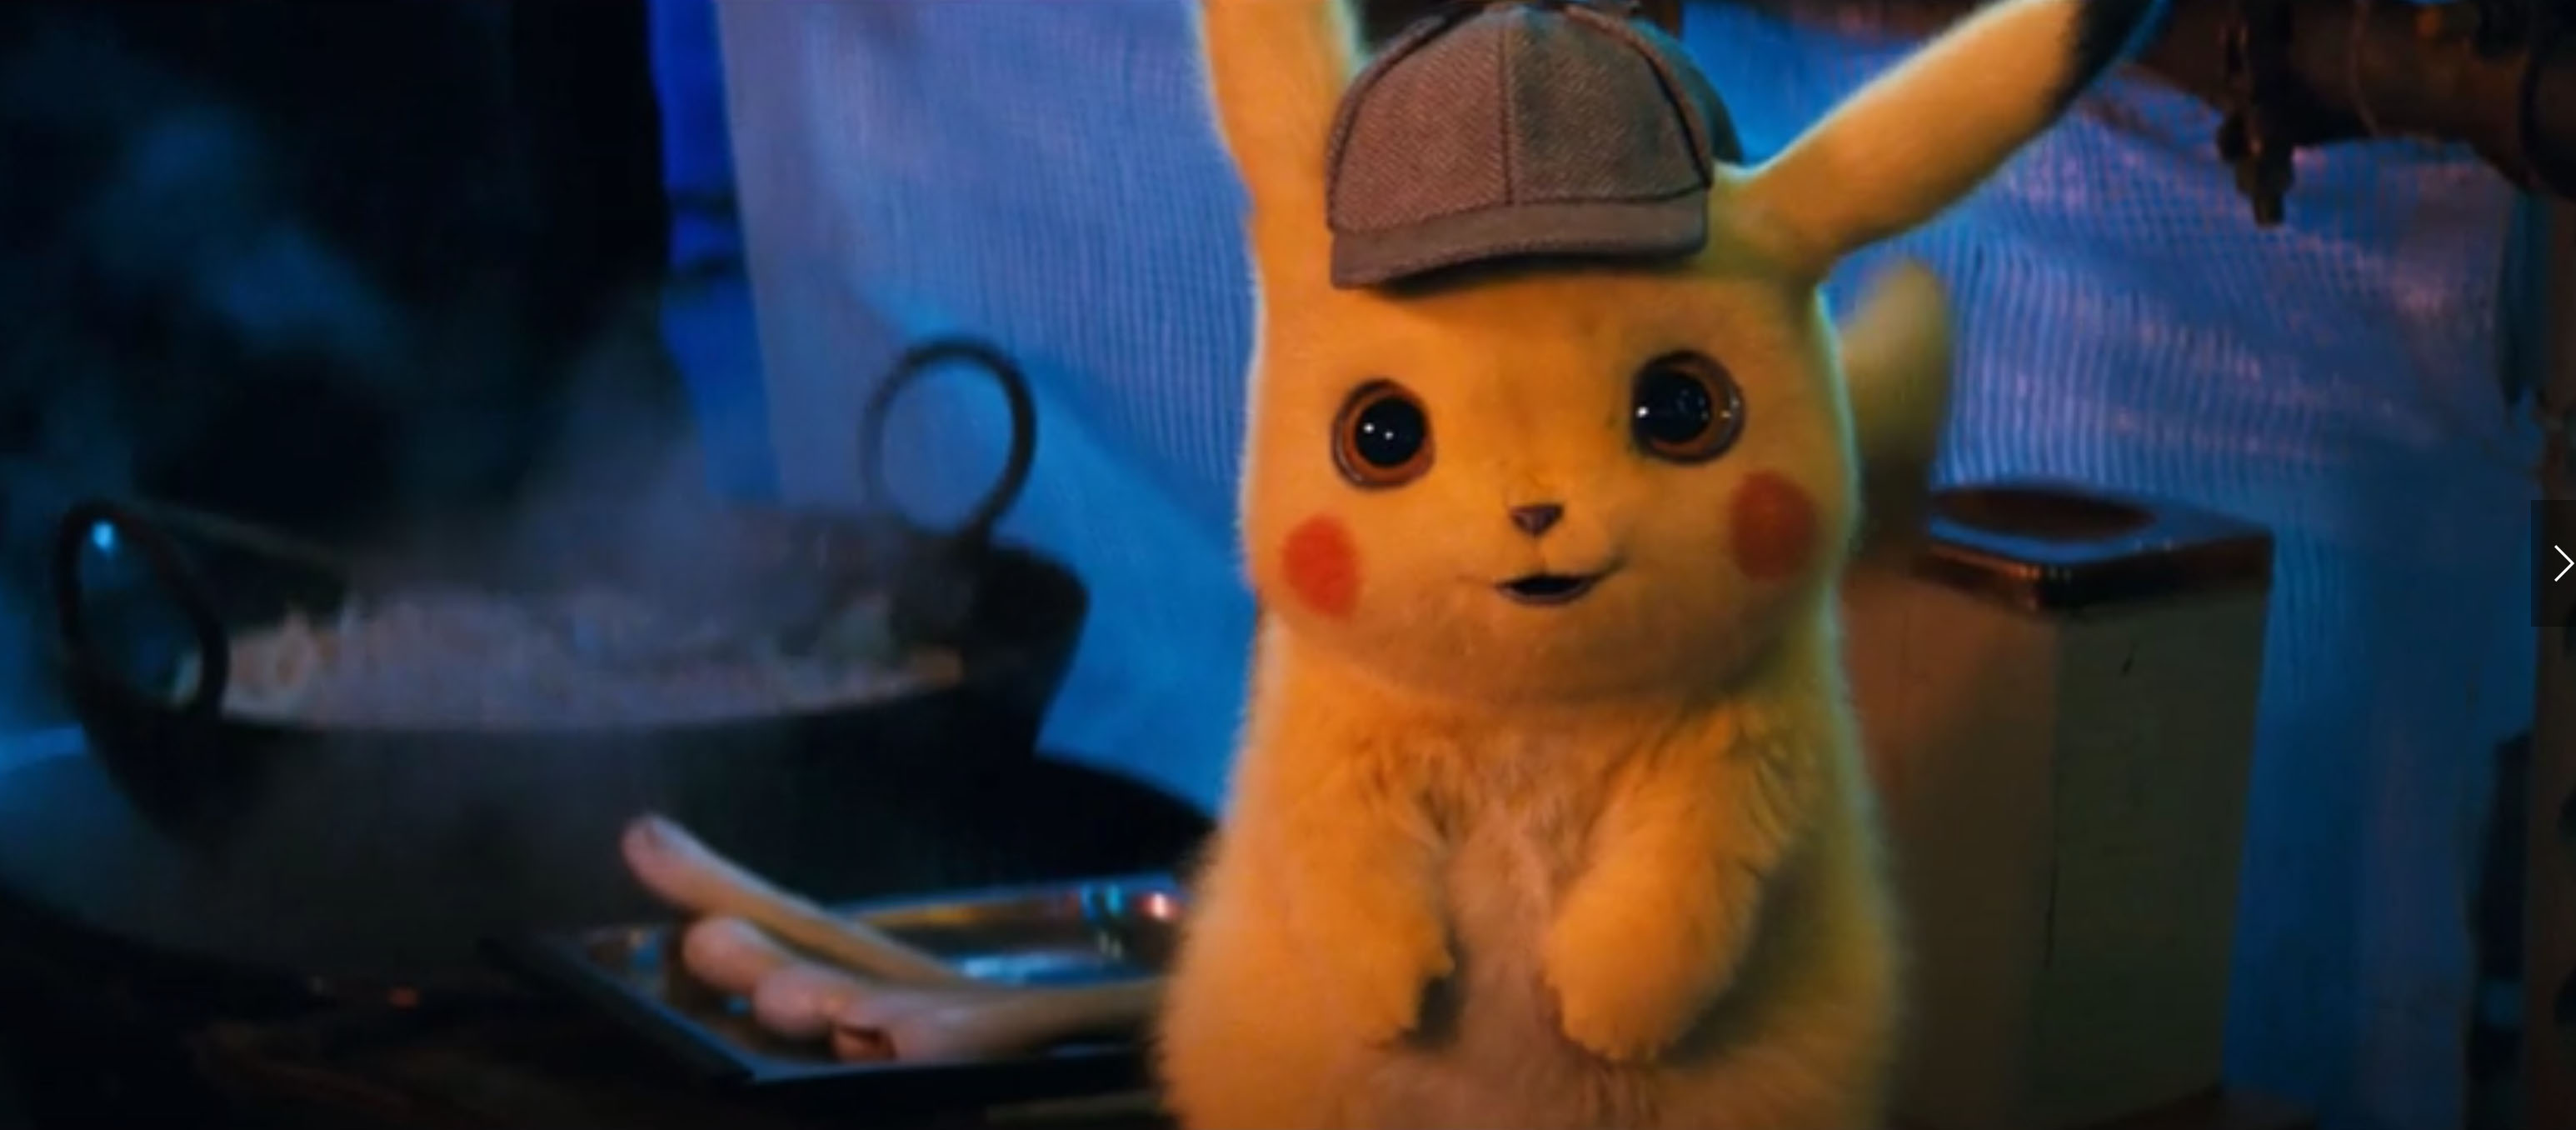 Pokémon: Detetive Pikachu | Linha de produtos inspirados no filme inclui chapéus, cartas e muito mais